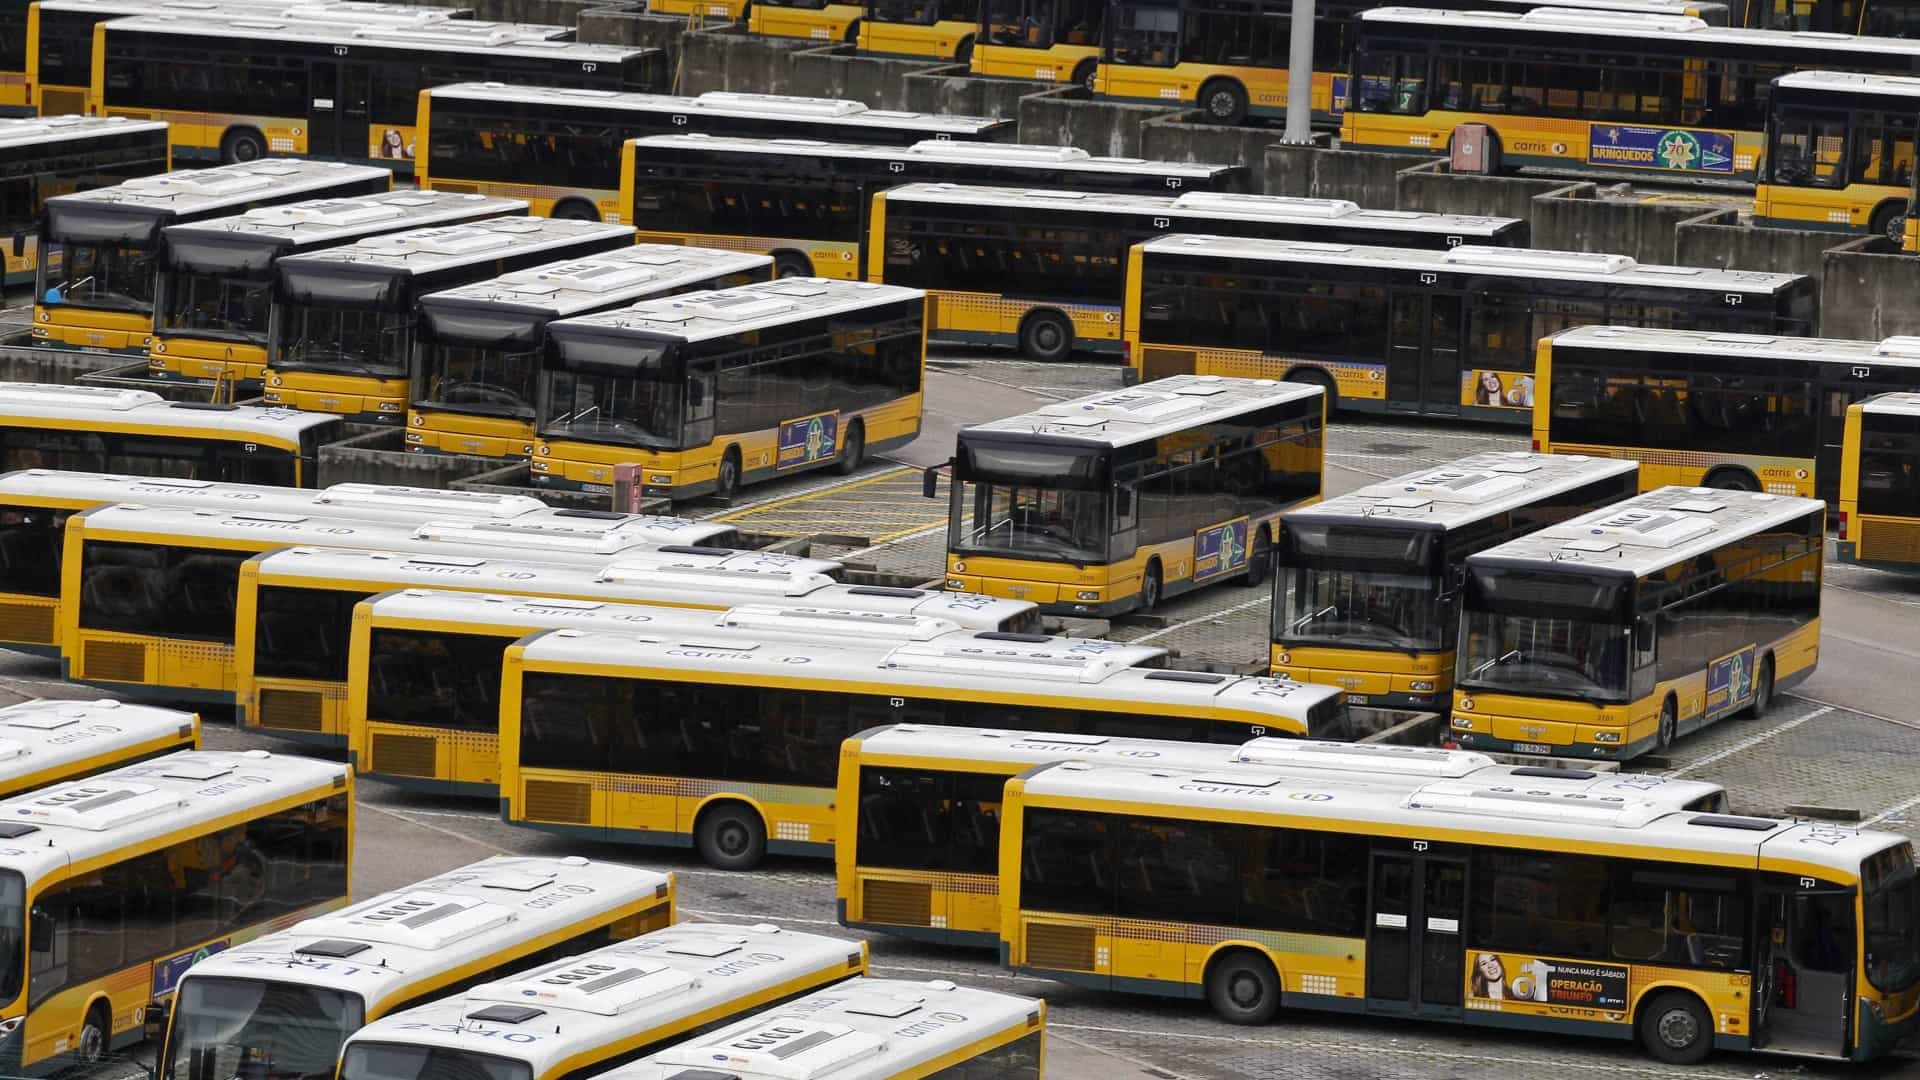 Prefeitura de Mogi das Cruzes - Secretaria de Educação - Notícias -  Prefeitura entrega 16 novos ônibus para renovação da frota do transporte  escolar